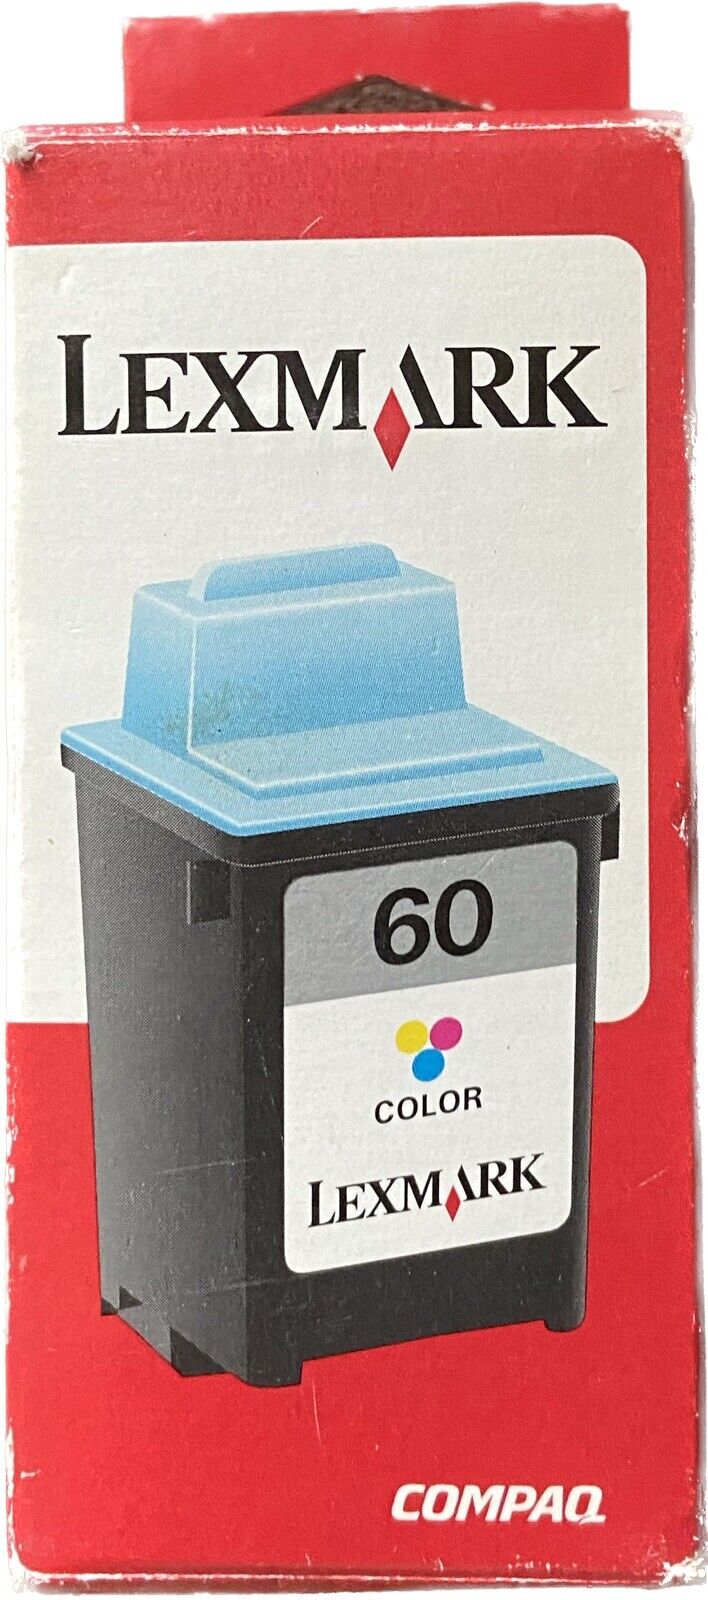 Genuine Lexmark 60 Color Ink Print Cartridge Jet printers Z12 Z22 Z32 IJ600